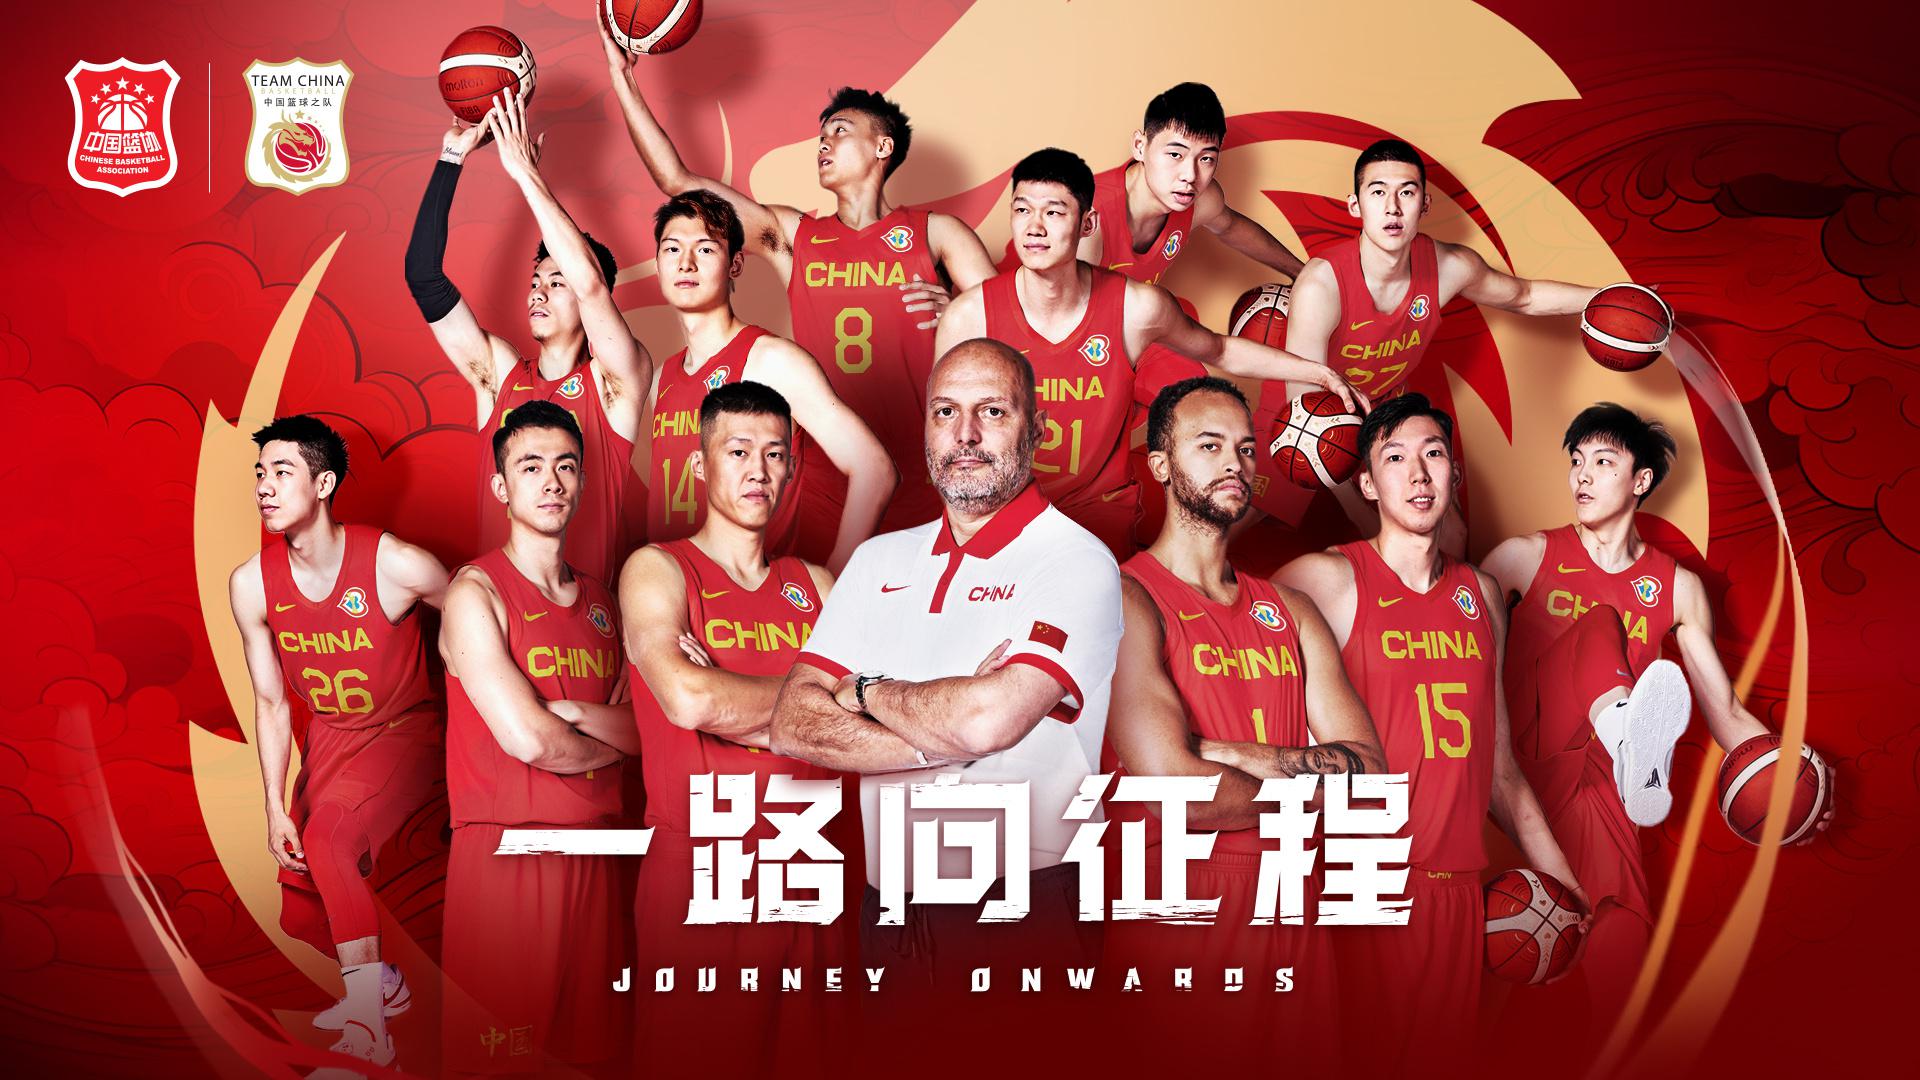 去拼吧！本届中国男篮平均身高202.9cm 平均年龄26.6岁